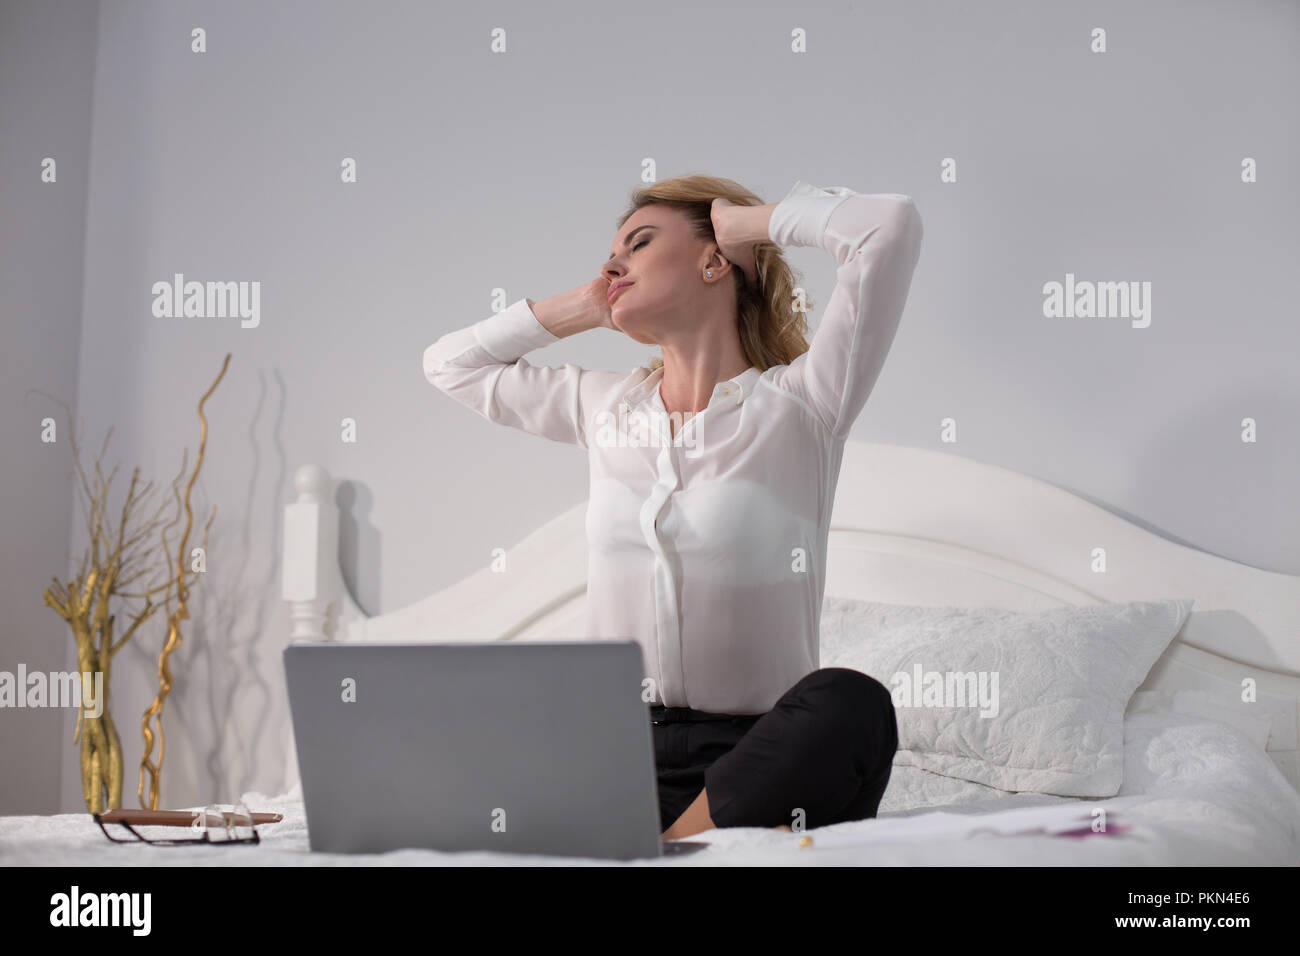 Business Woman sitting on bed et de travail Banque D'Images